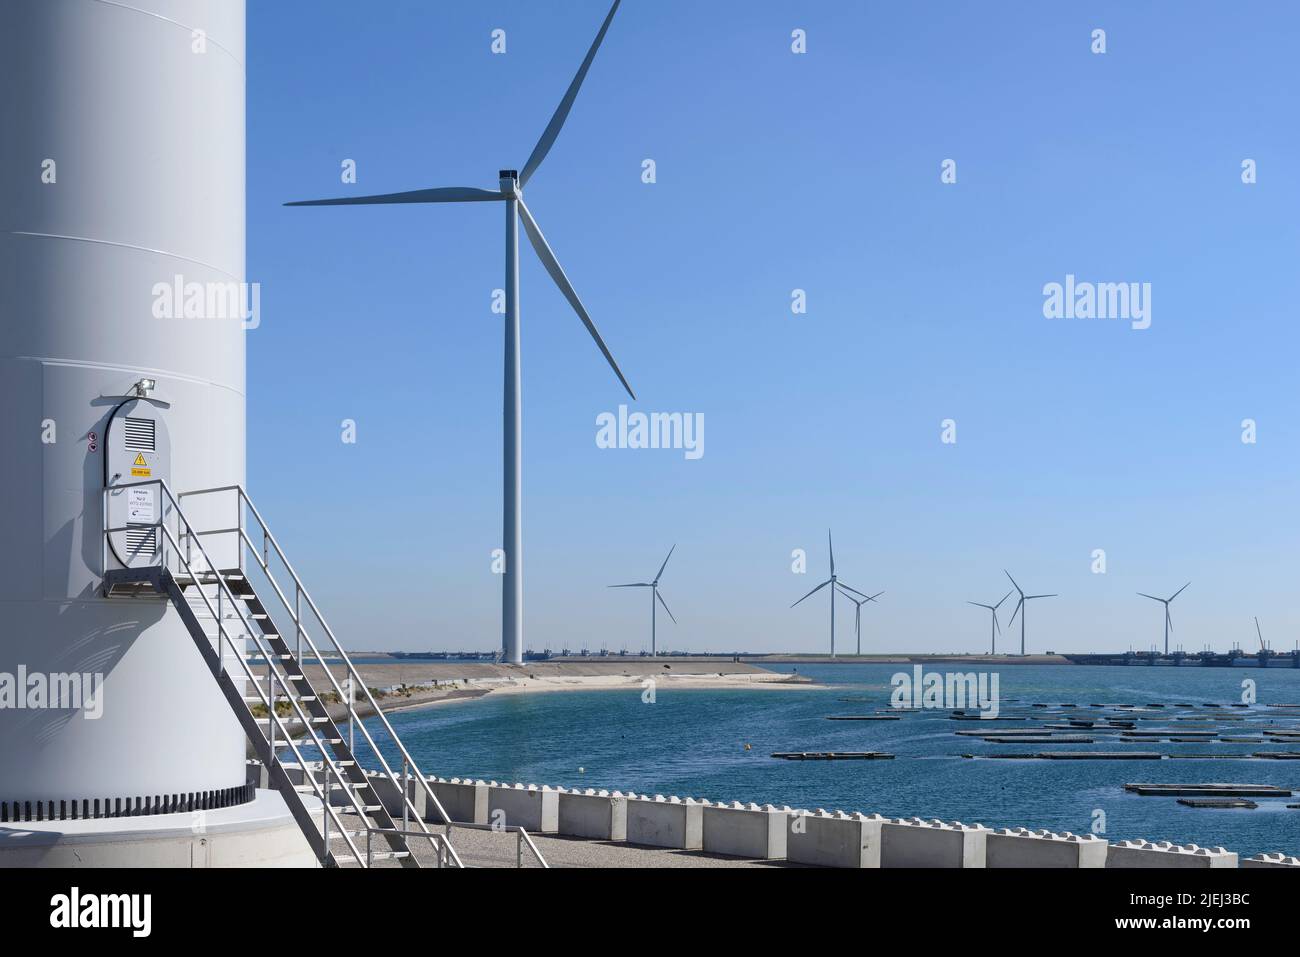 Moderne weiße Windkraftanlagen oder Windmühlen, erneuerbare Energie Foto Stock